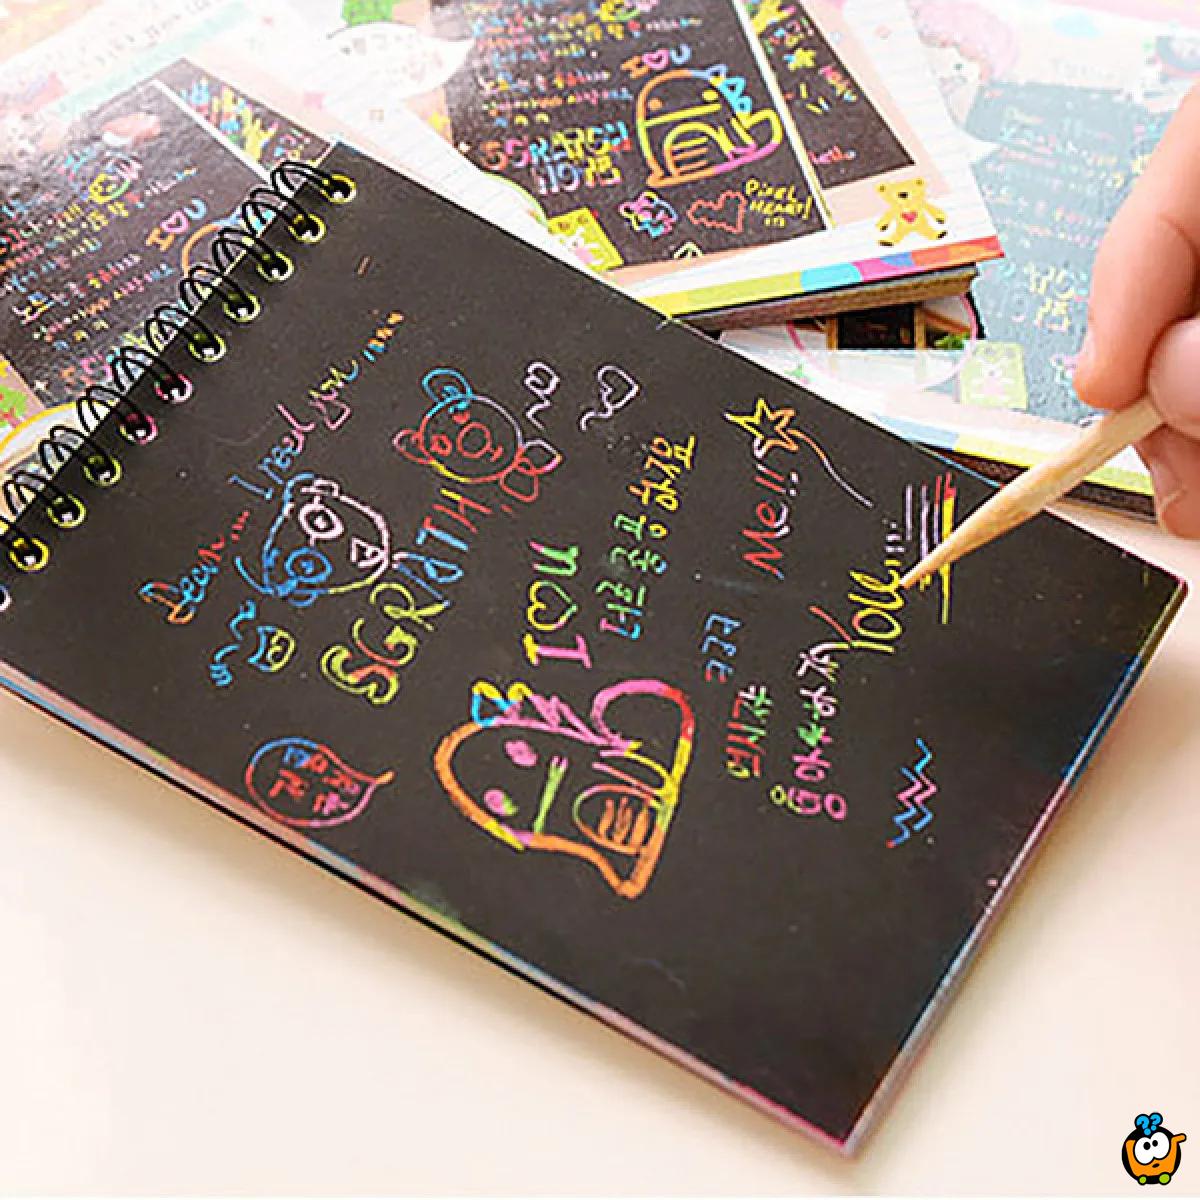 Rainbow notes - Zgrafito notes za decu